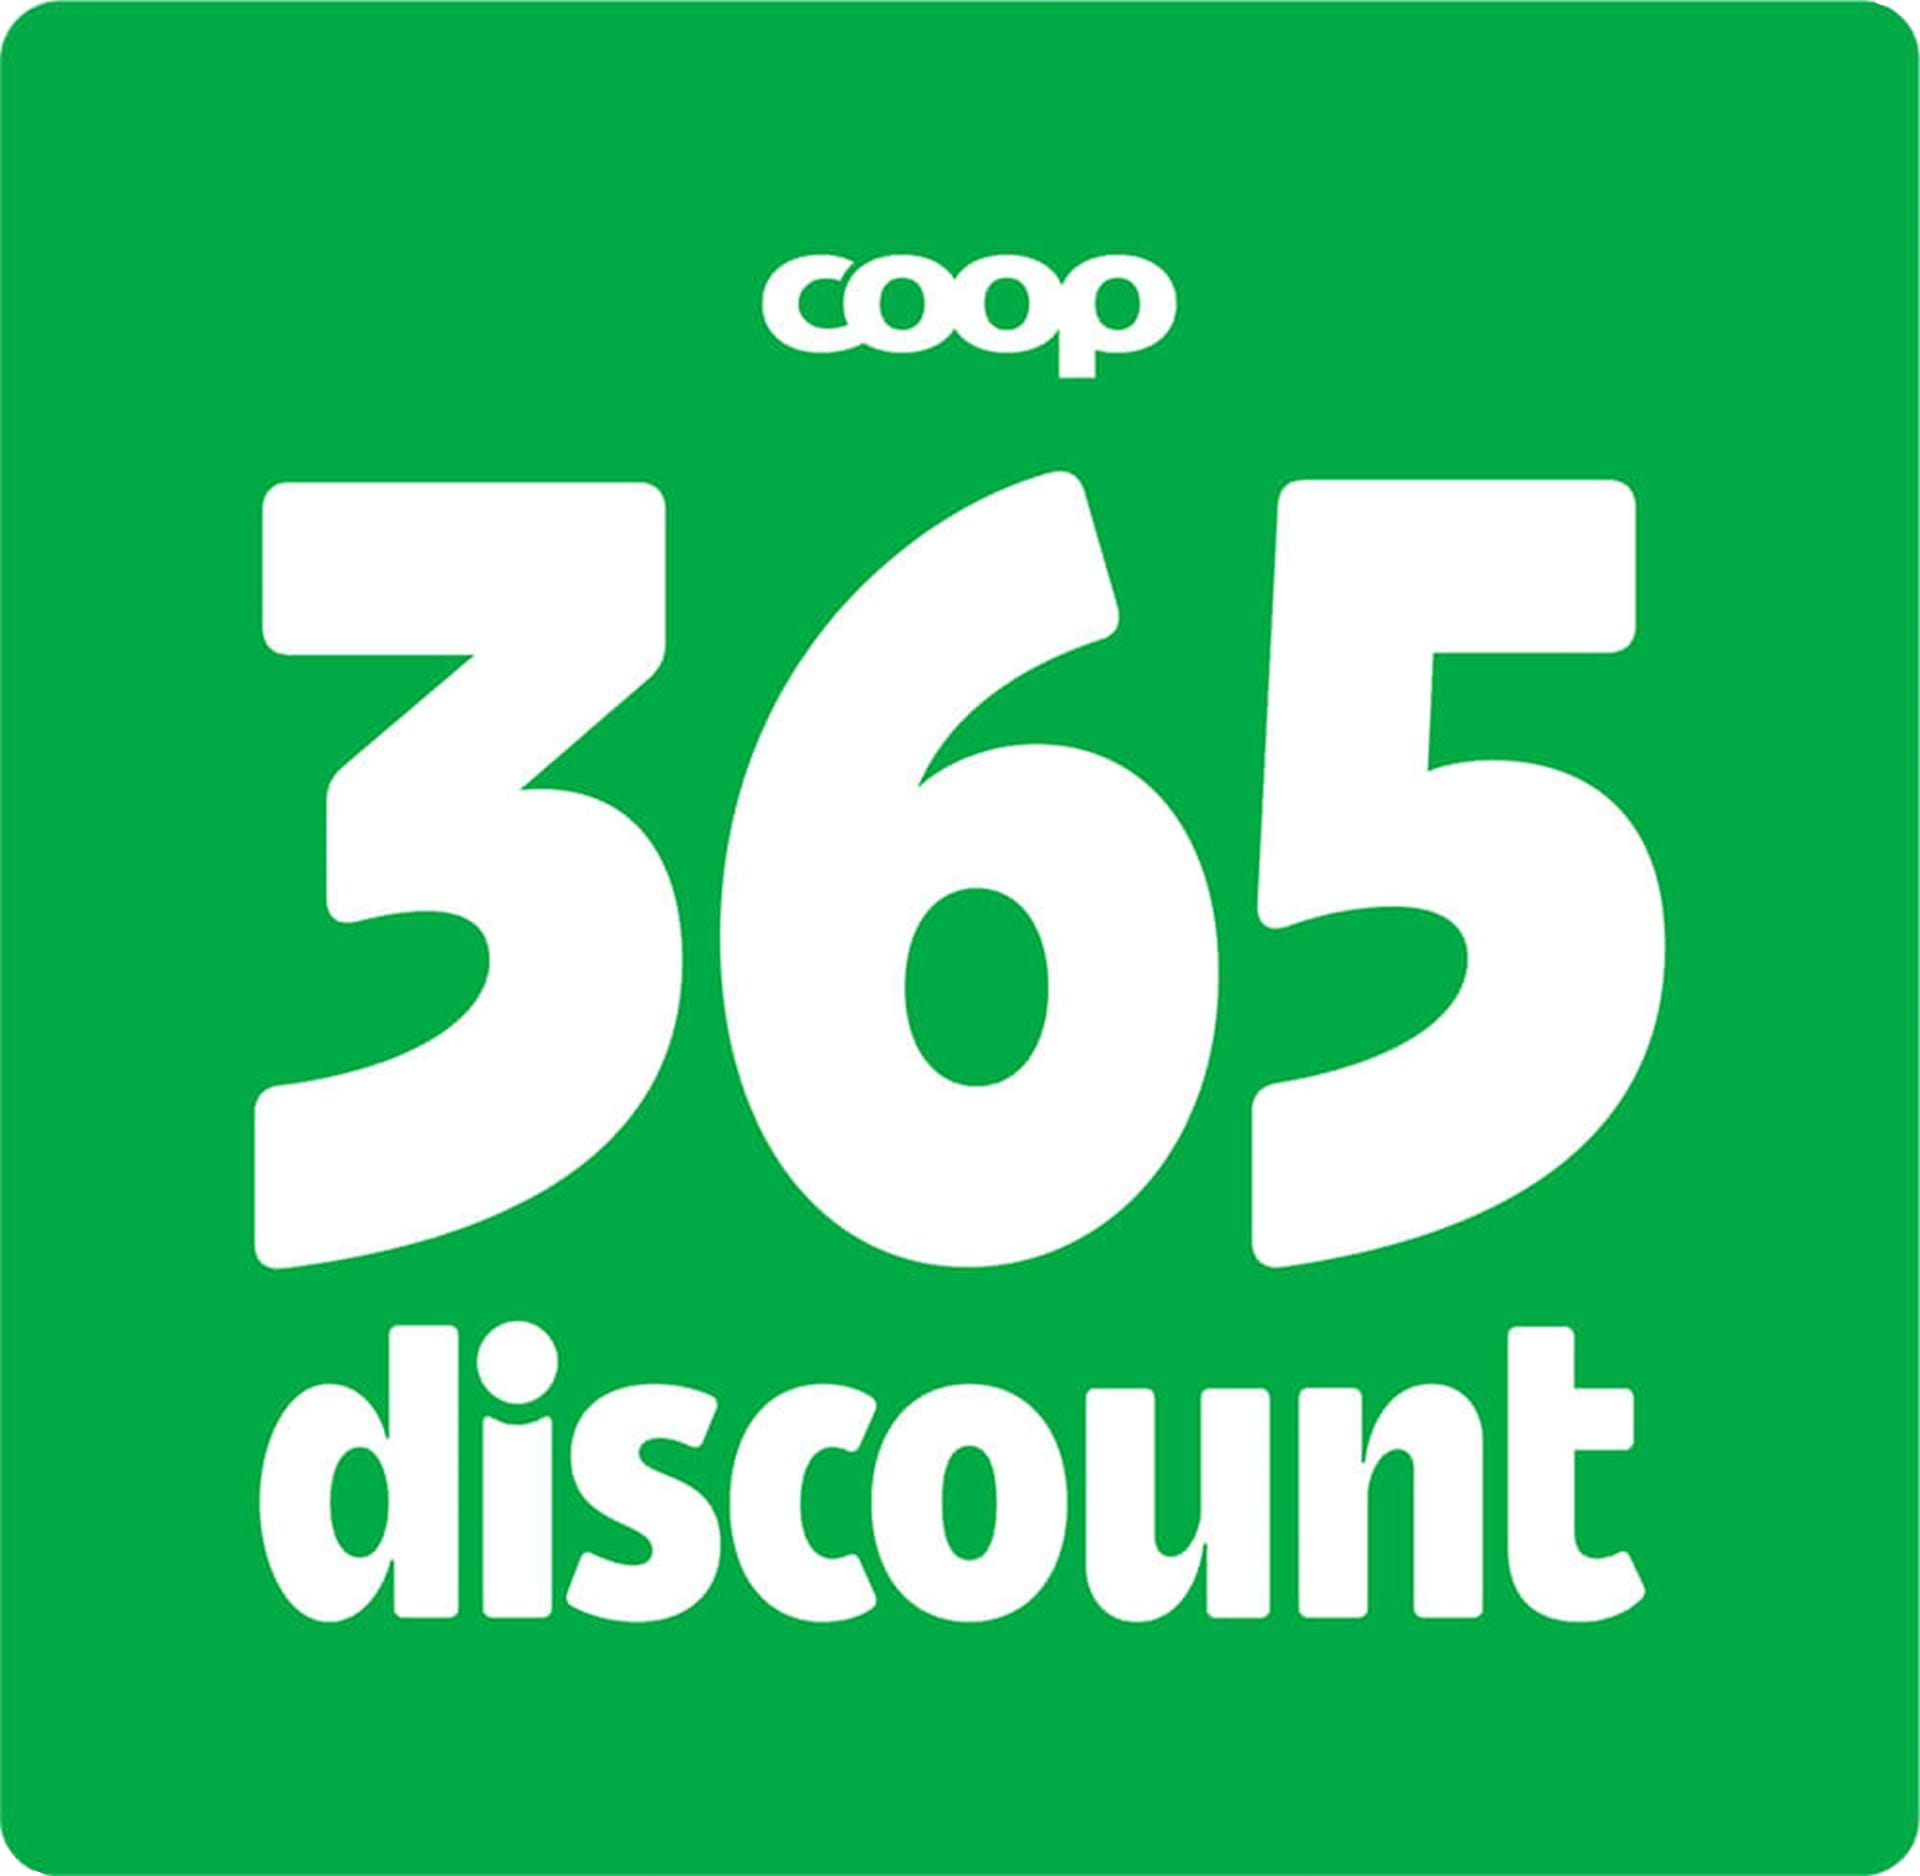 Coop 365 discount